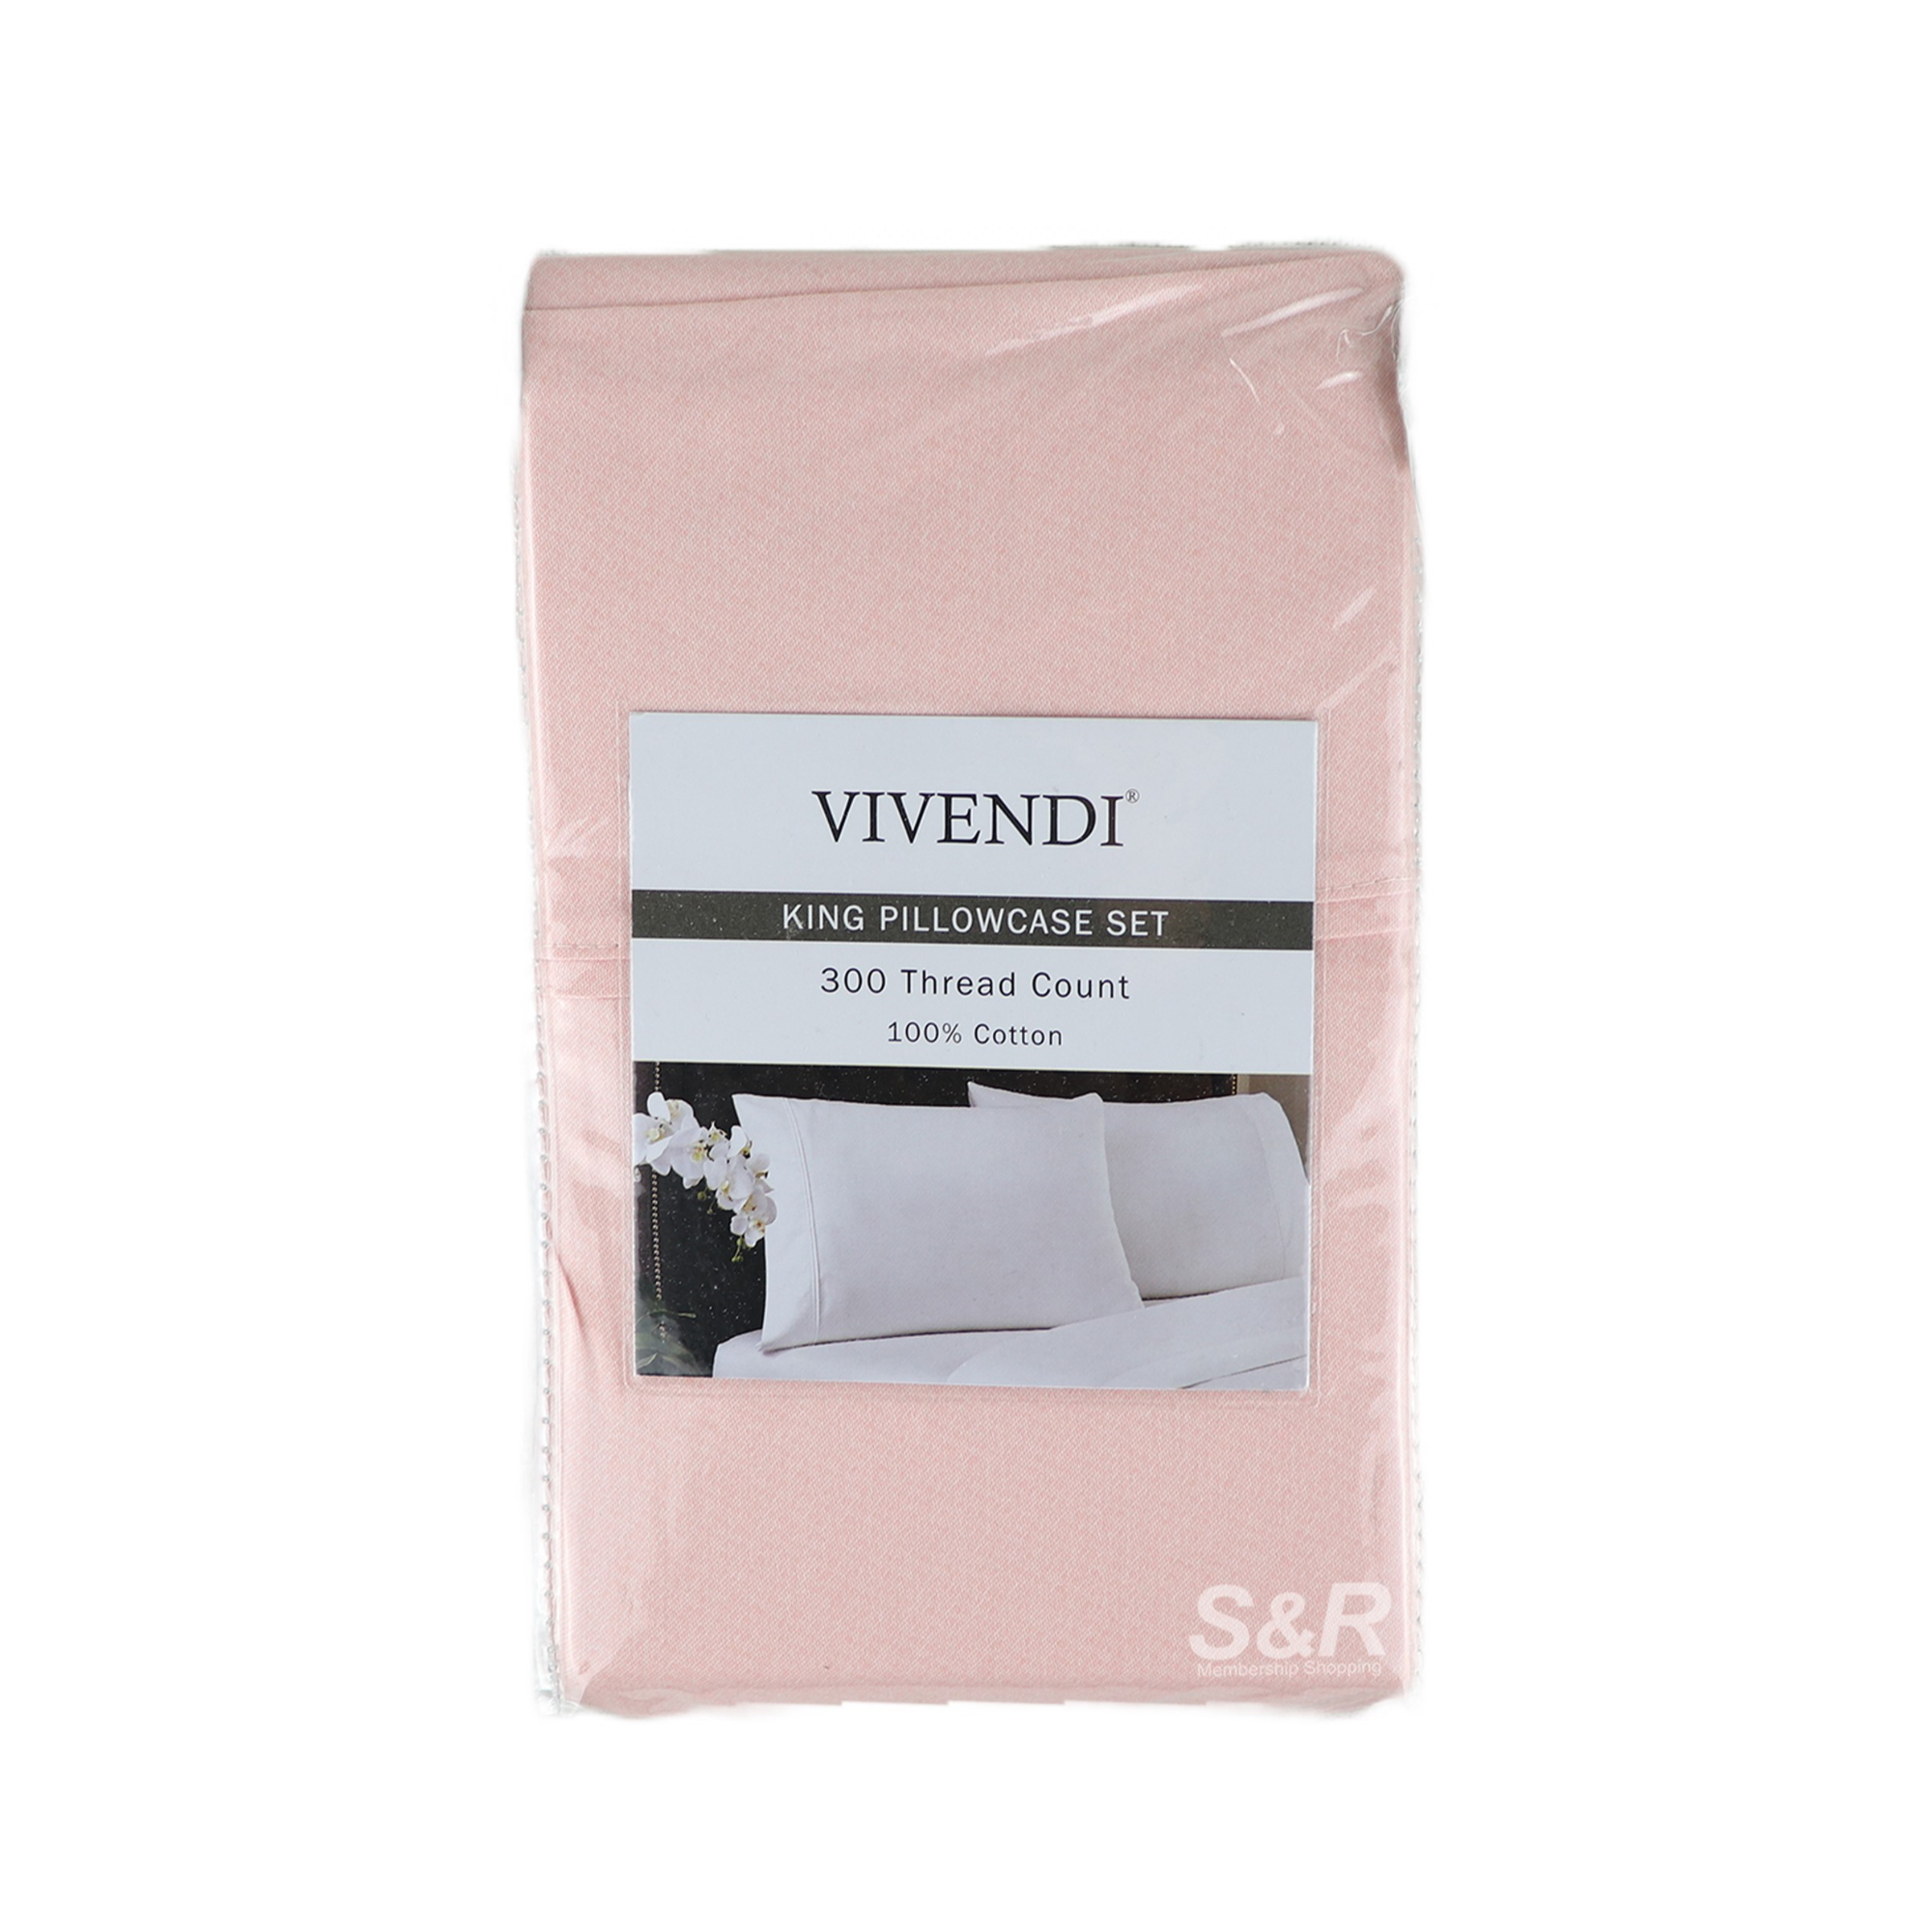 Vivendi King Pillowcase Set